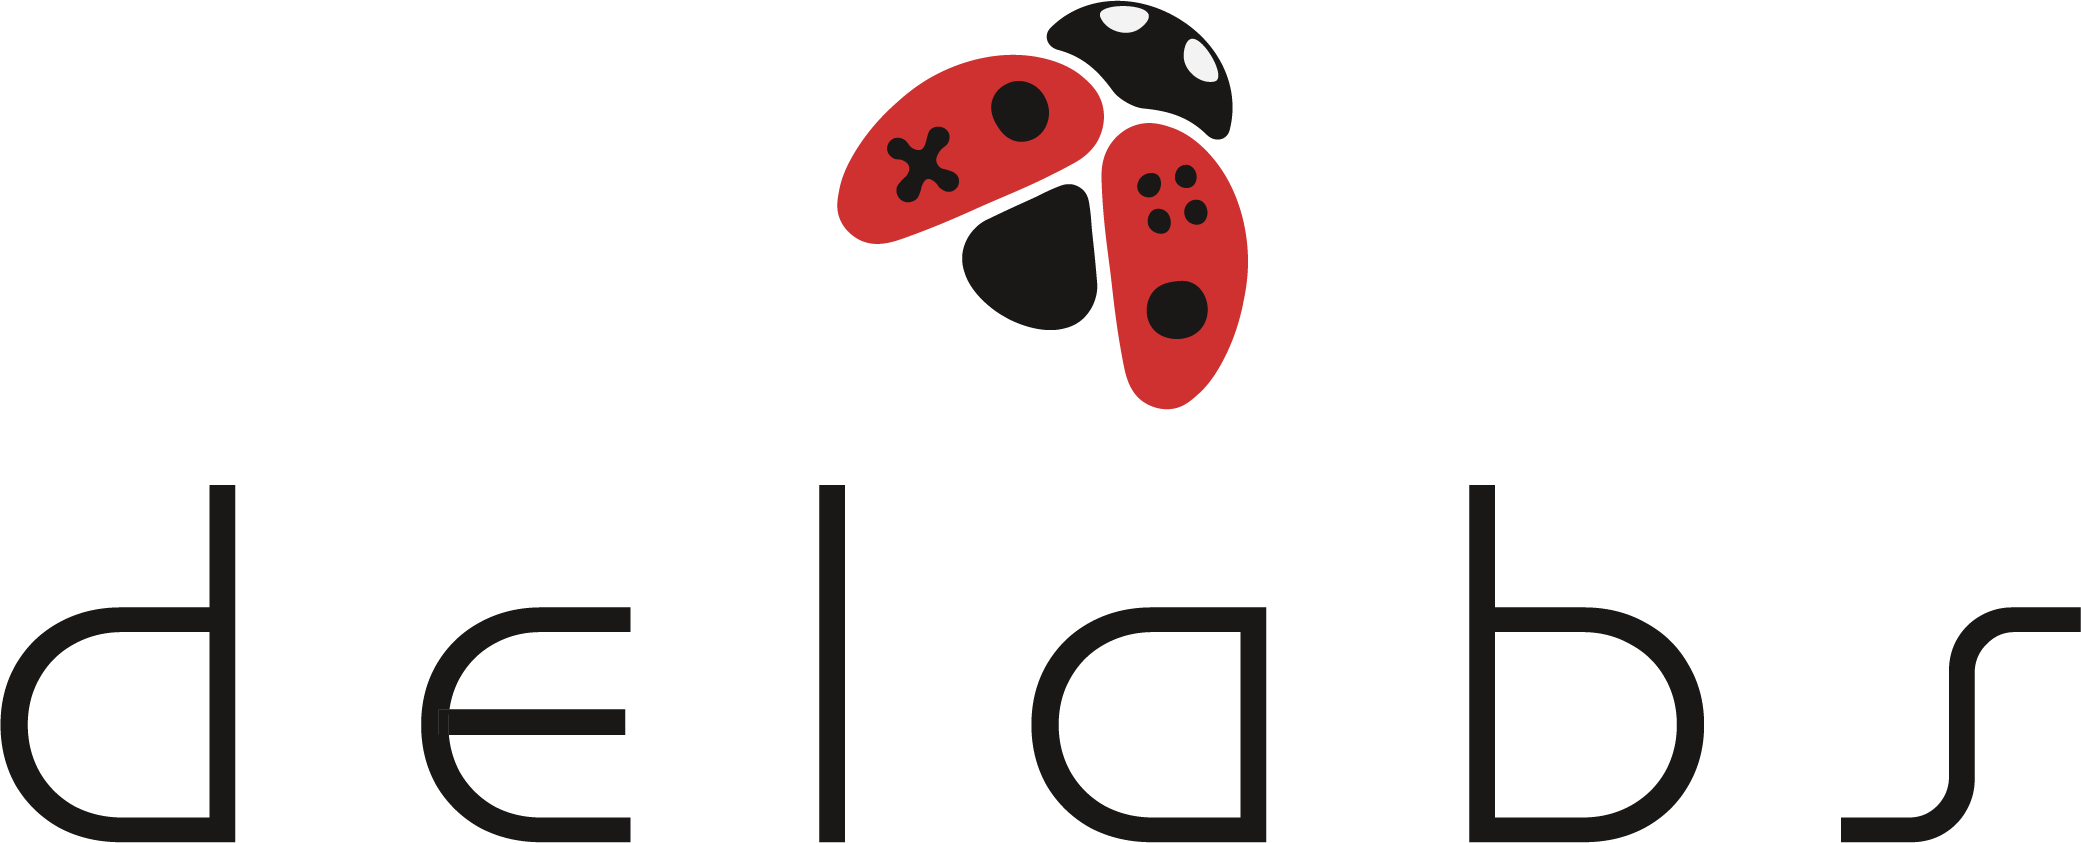 delabs logo